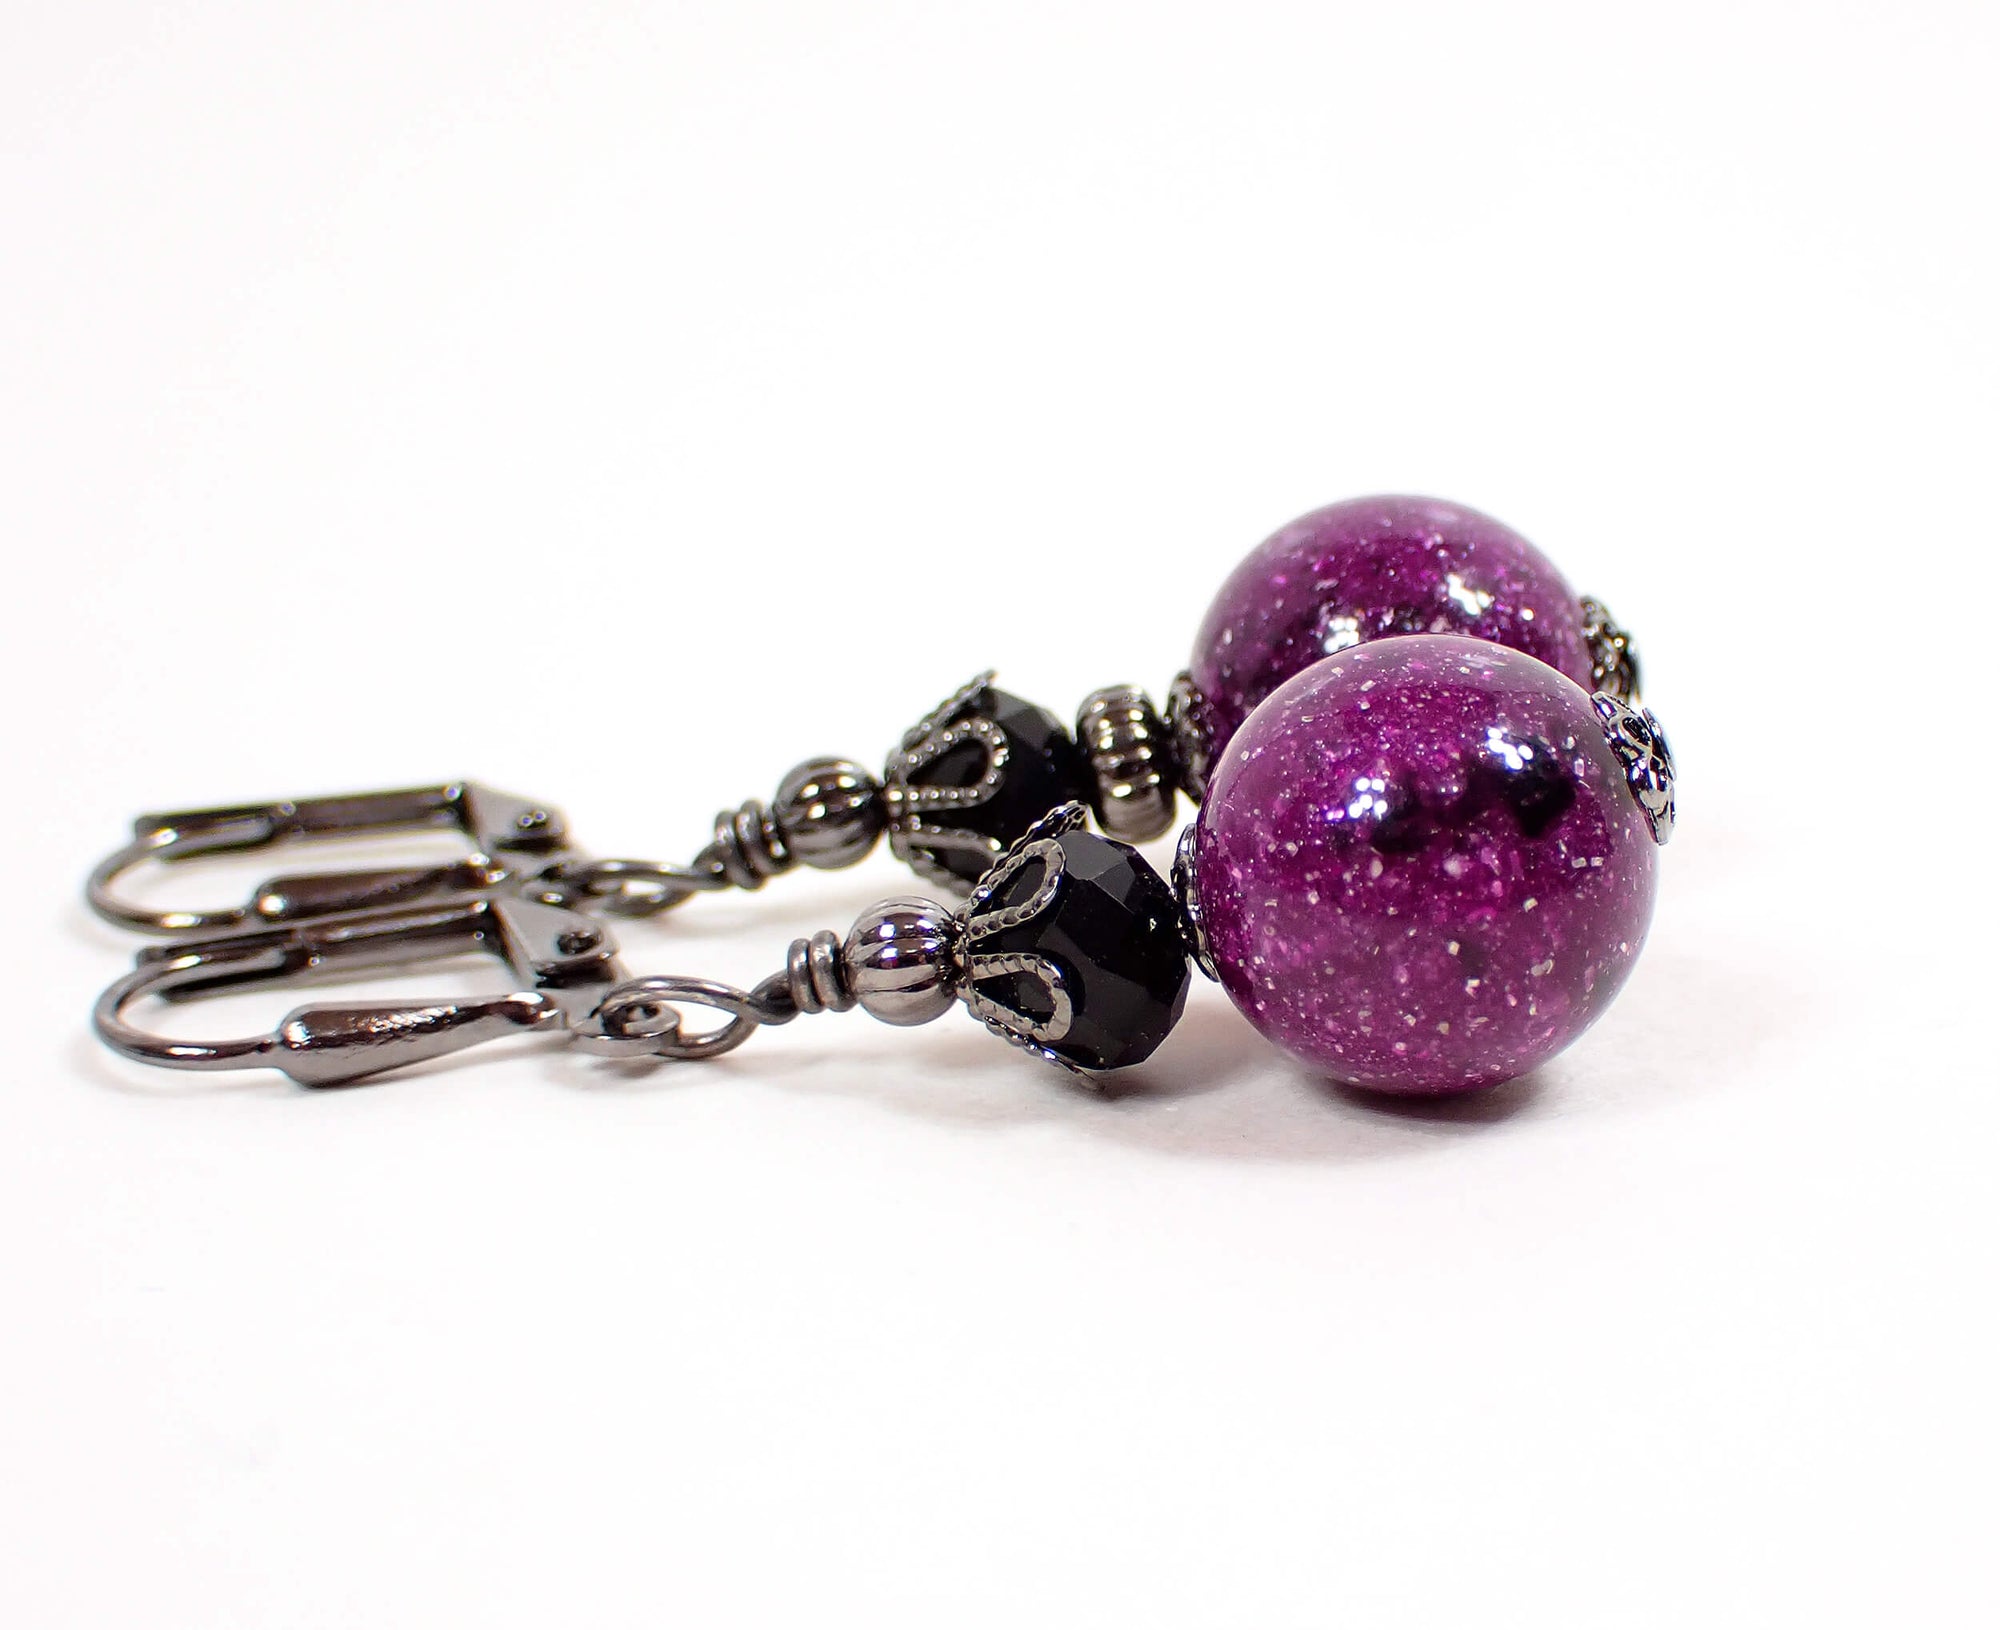 Pendientes hechos a mano de lucite púrpura brillante y galaxia negra con palanca de gancho de latón envejecido o clip en